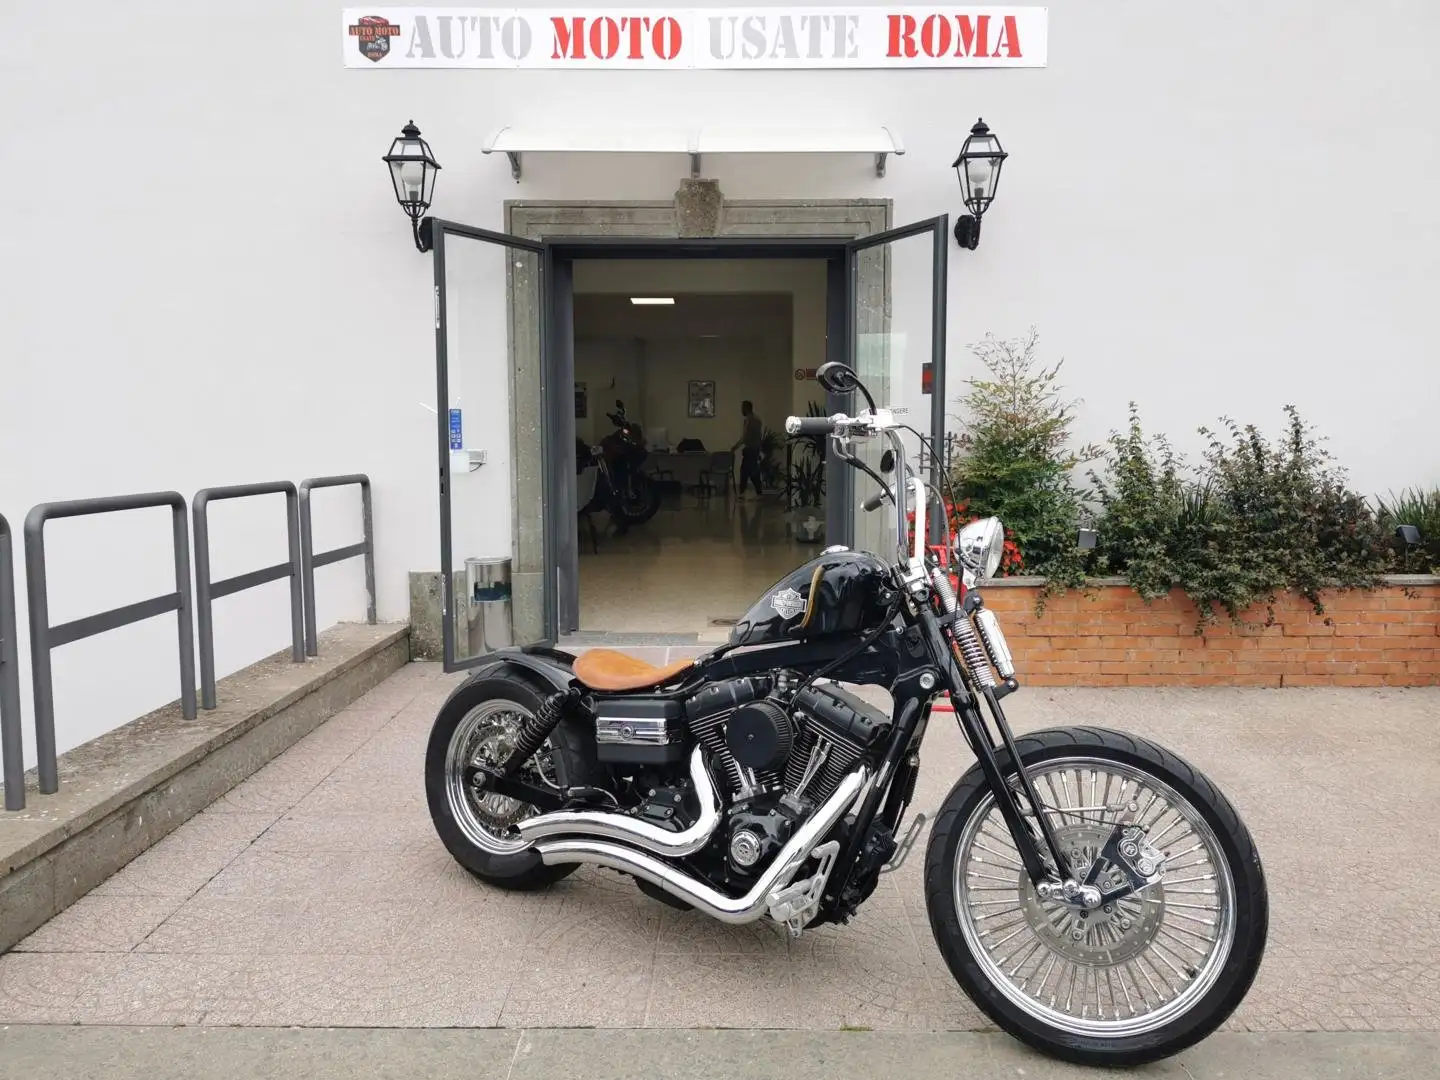 usato Harley-Davidson Fat Bob Chopper/Cruiser a Marino- Rm per € 13.900,-